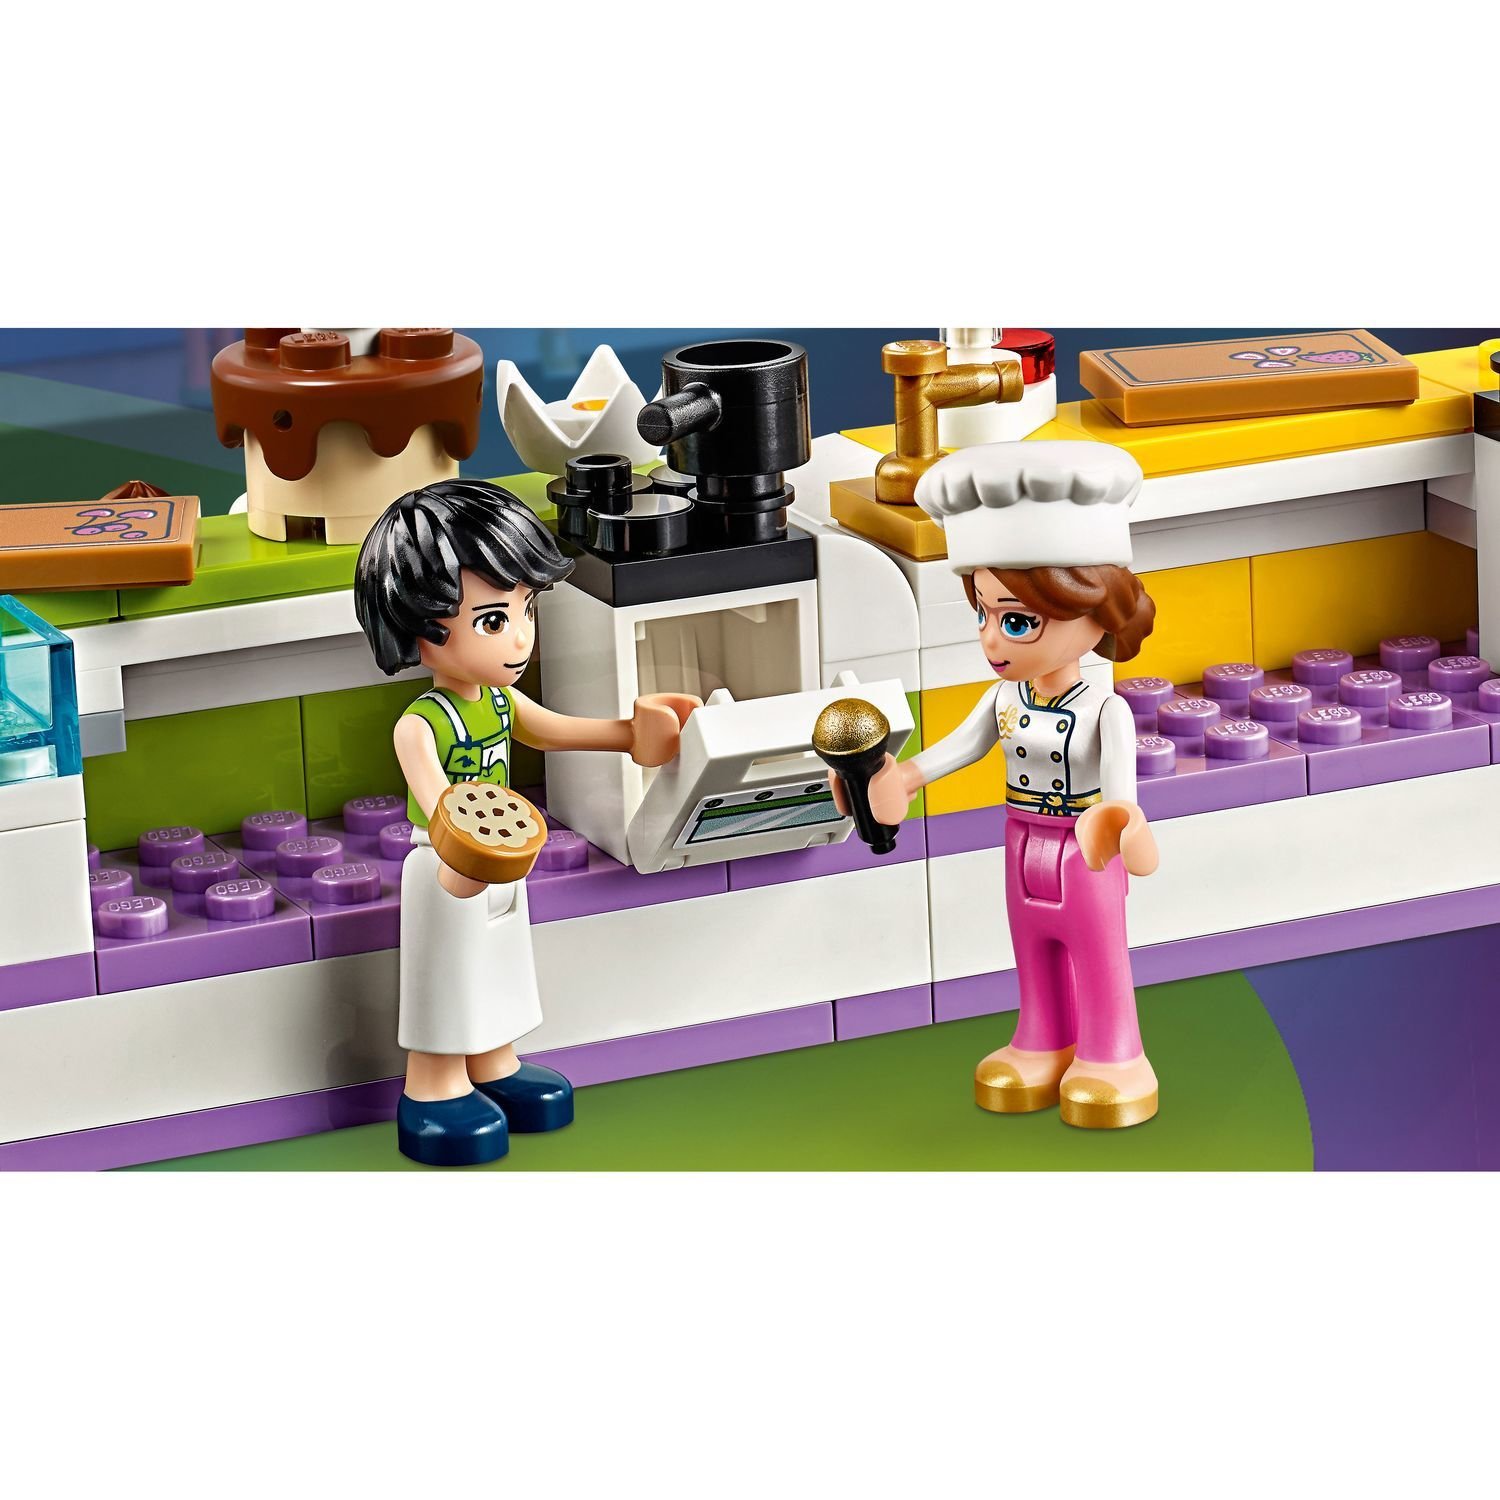 Конструктор LEGO Friends 41393 Соревнование кондитеров